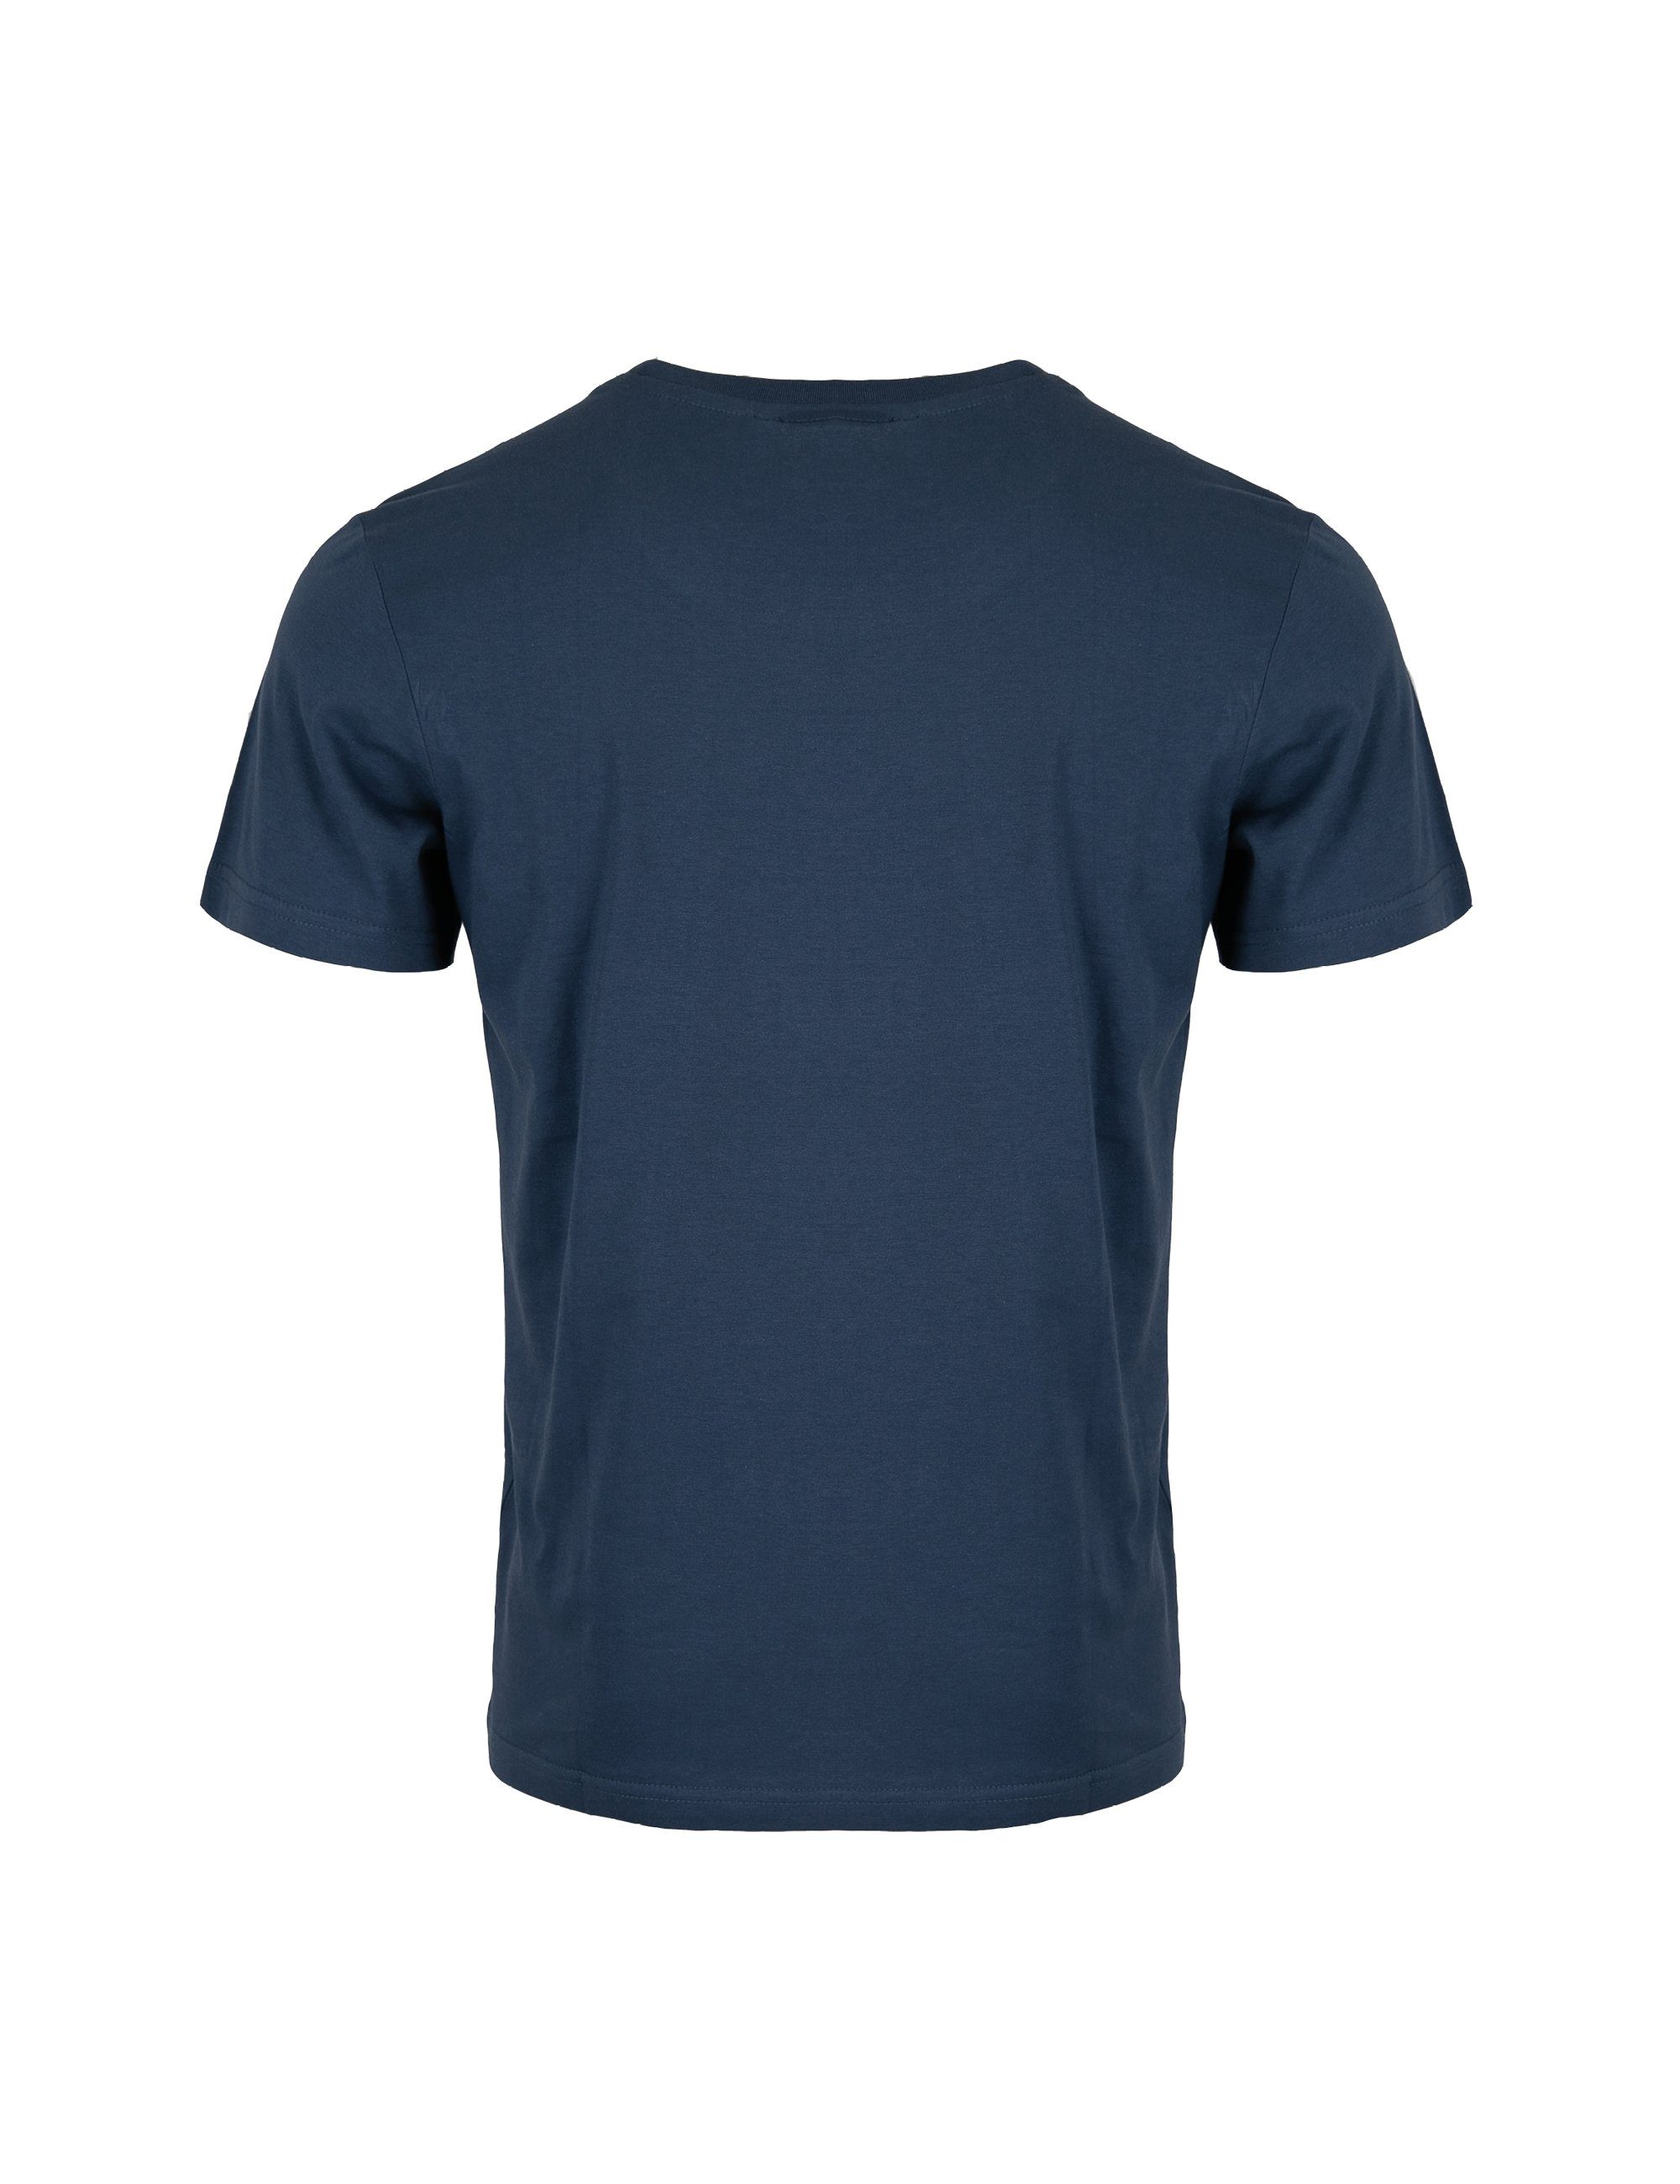 ROADSIGN australia T-Shirt Roadsign BCI-Baumwolle Logo-Aufdruck, % Lifestyle mit Navy Rundhalsausschnitt & 100 (1-tlg)